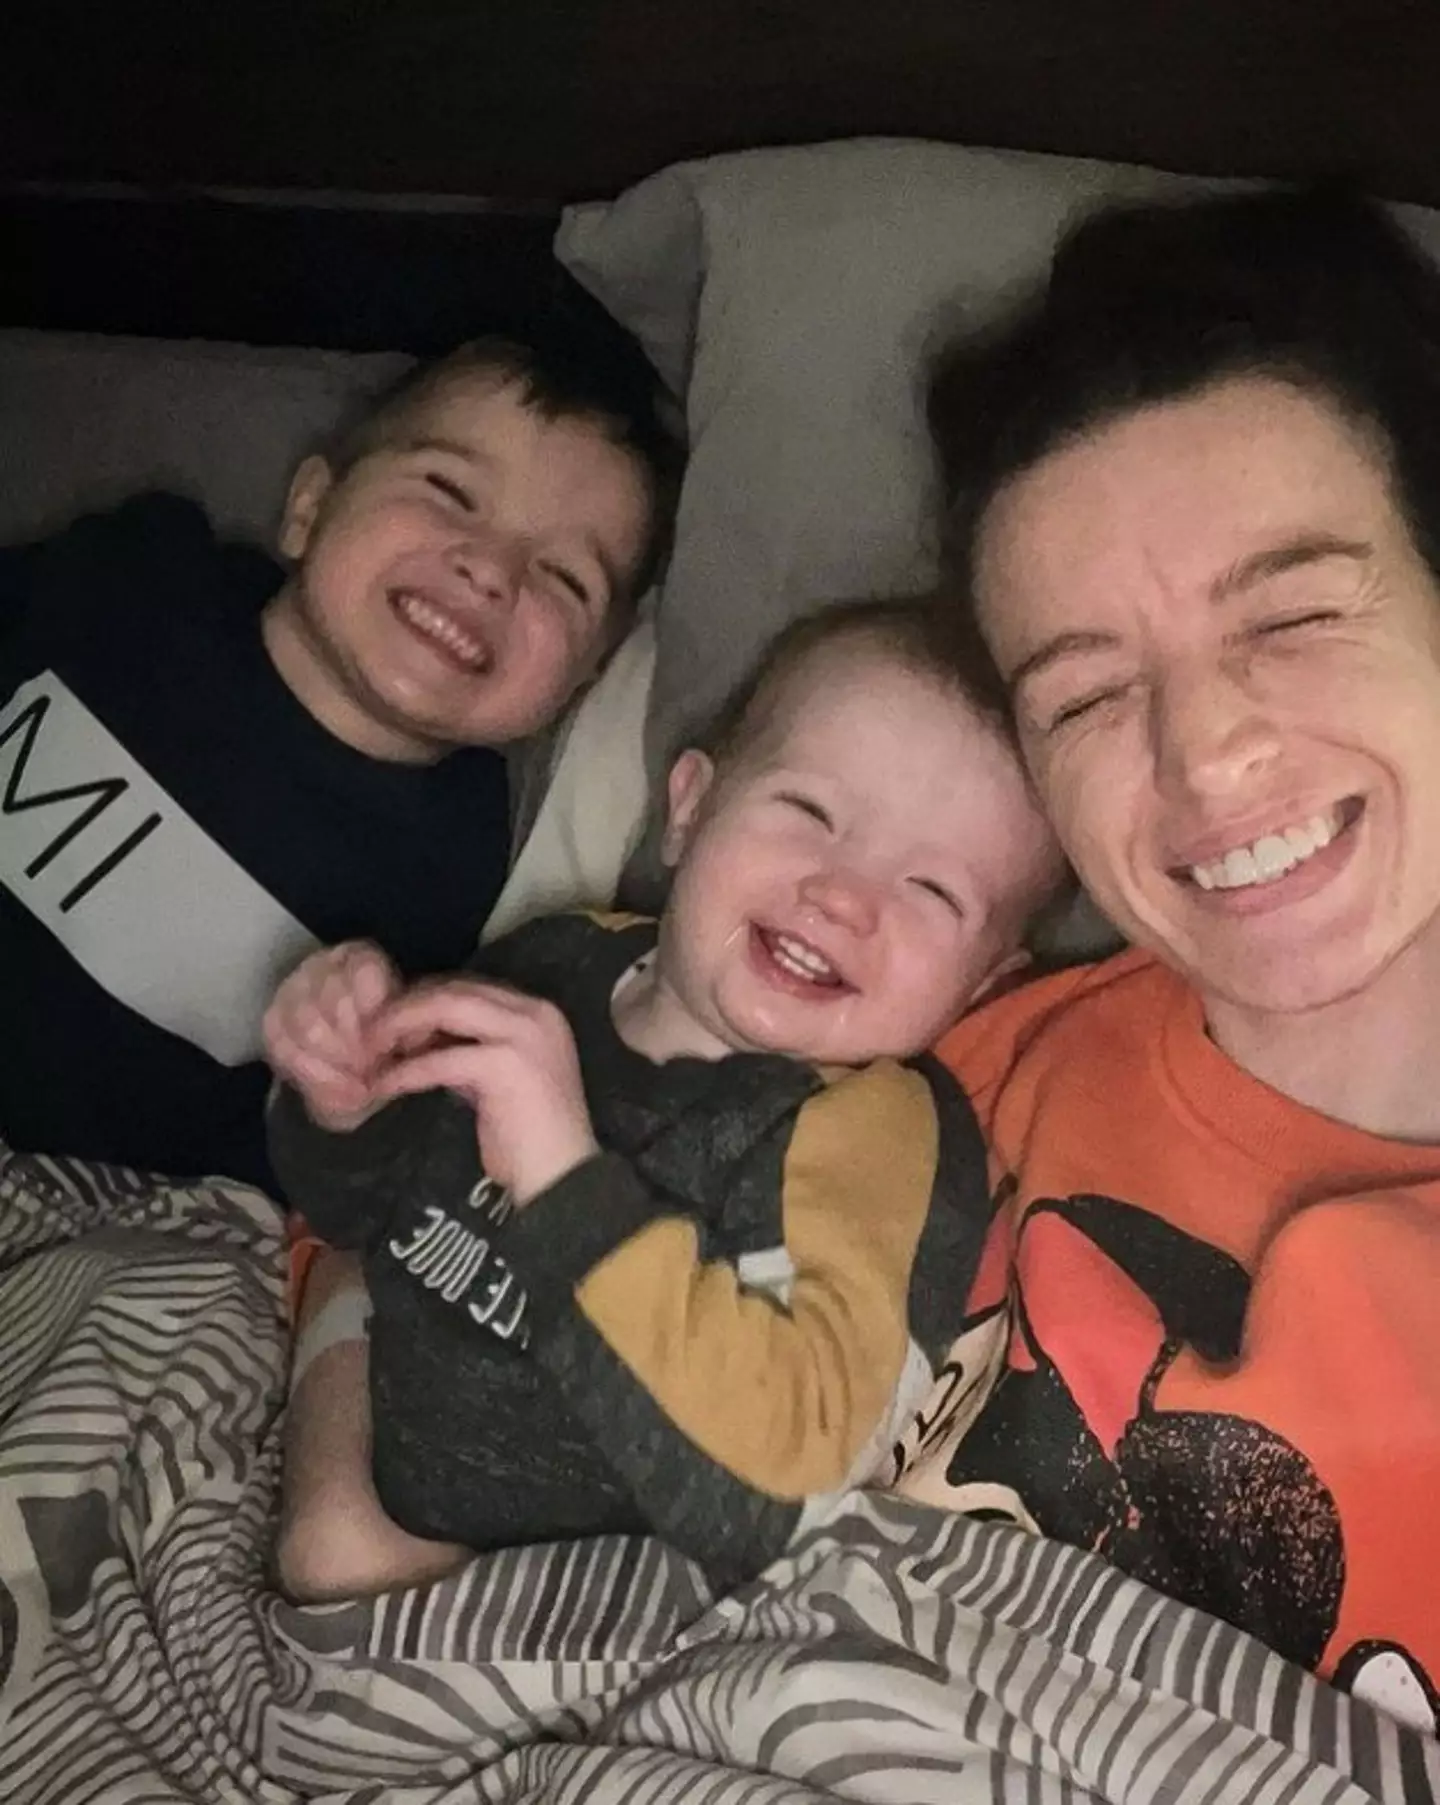 Her last Instagram post with her children.